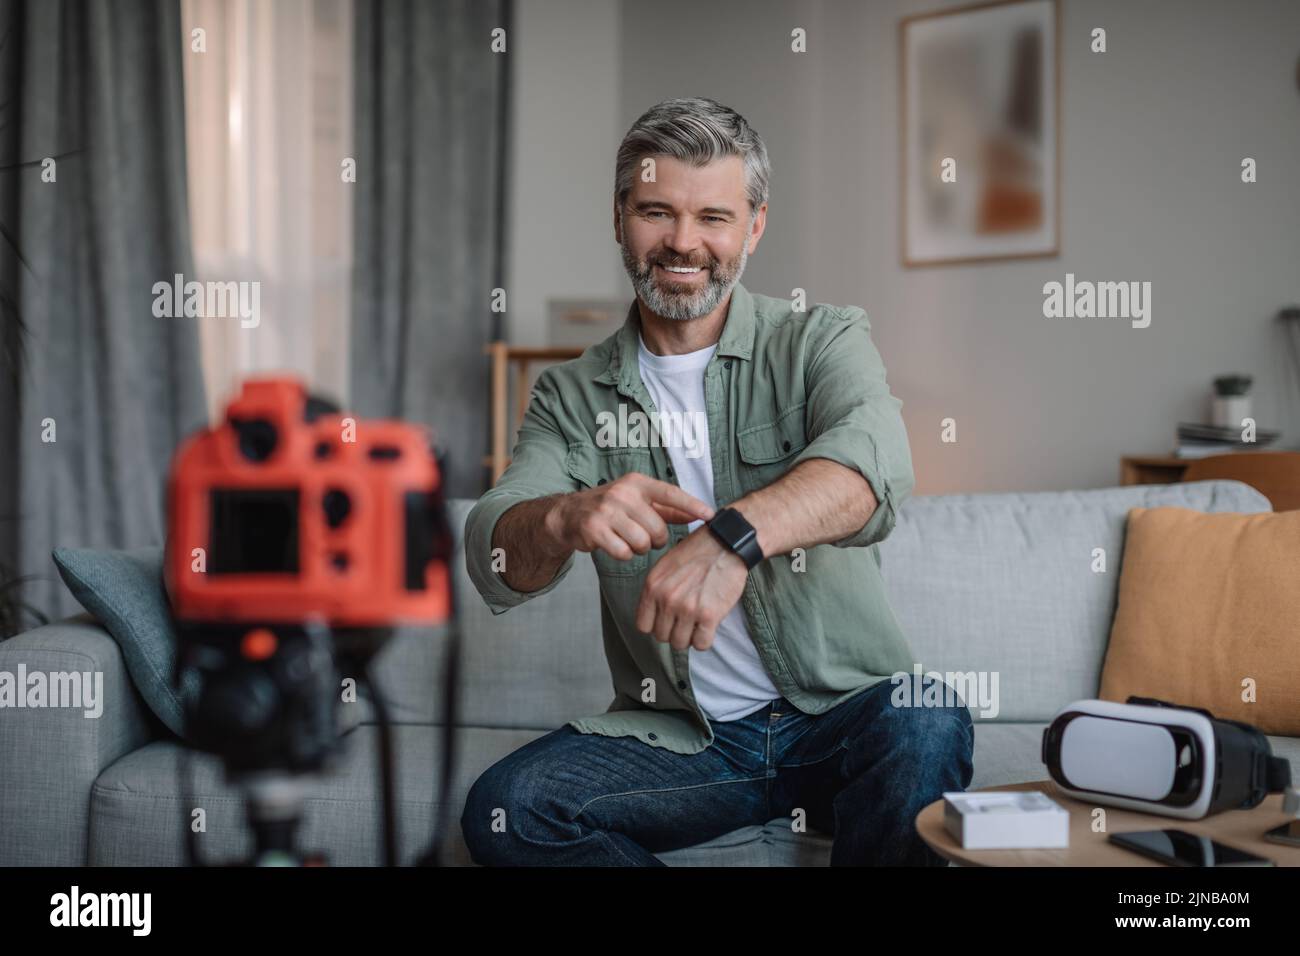 Alegre hombre europeo retirado con barba hace una visión general de los dispositivos y muestra el reloj inteligente Foto de stock